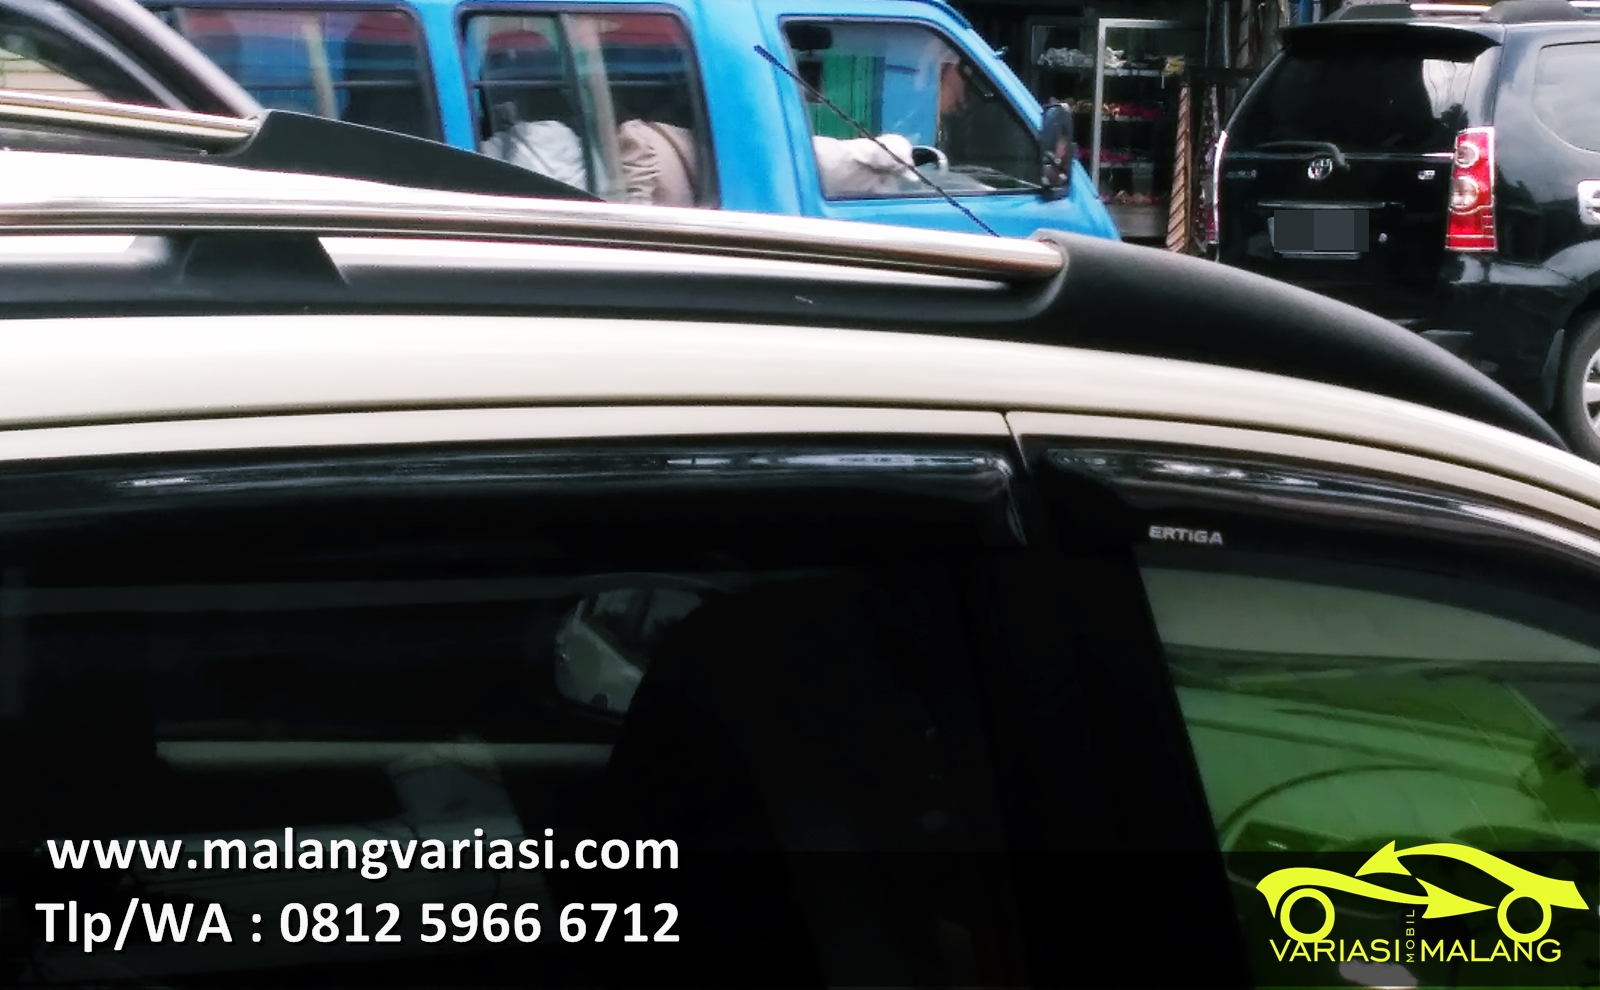 Jual Aksesoris Variasi Mobil All Varian Ertiga Malang Pusat